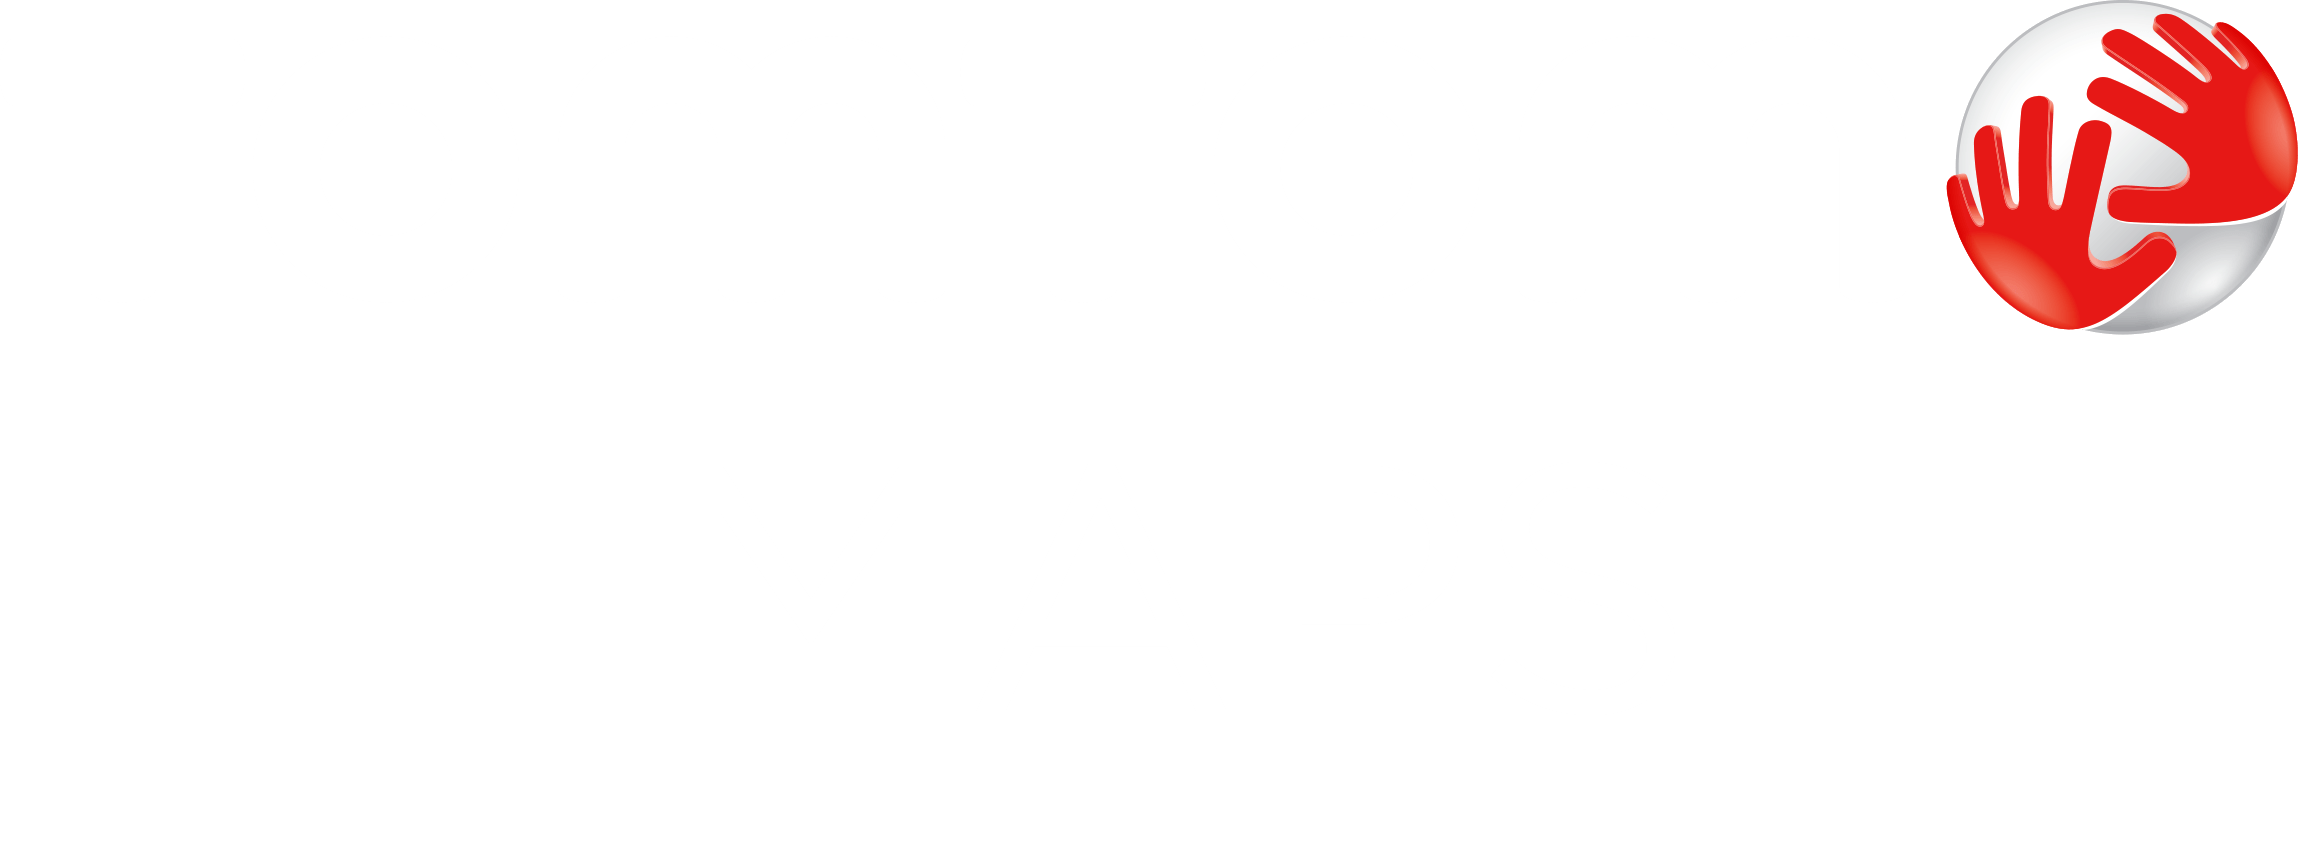 TomTom Logo - TomTom Maps